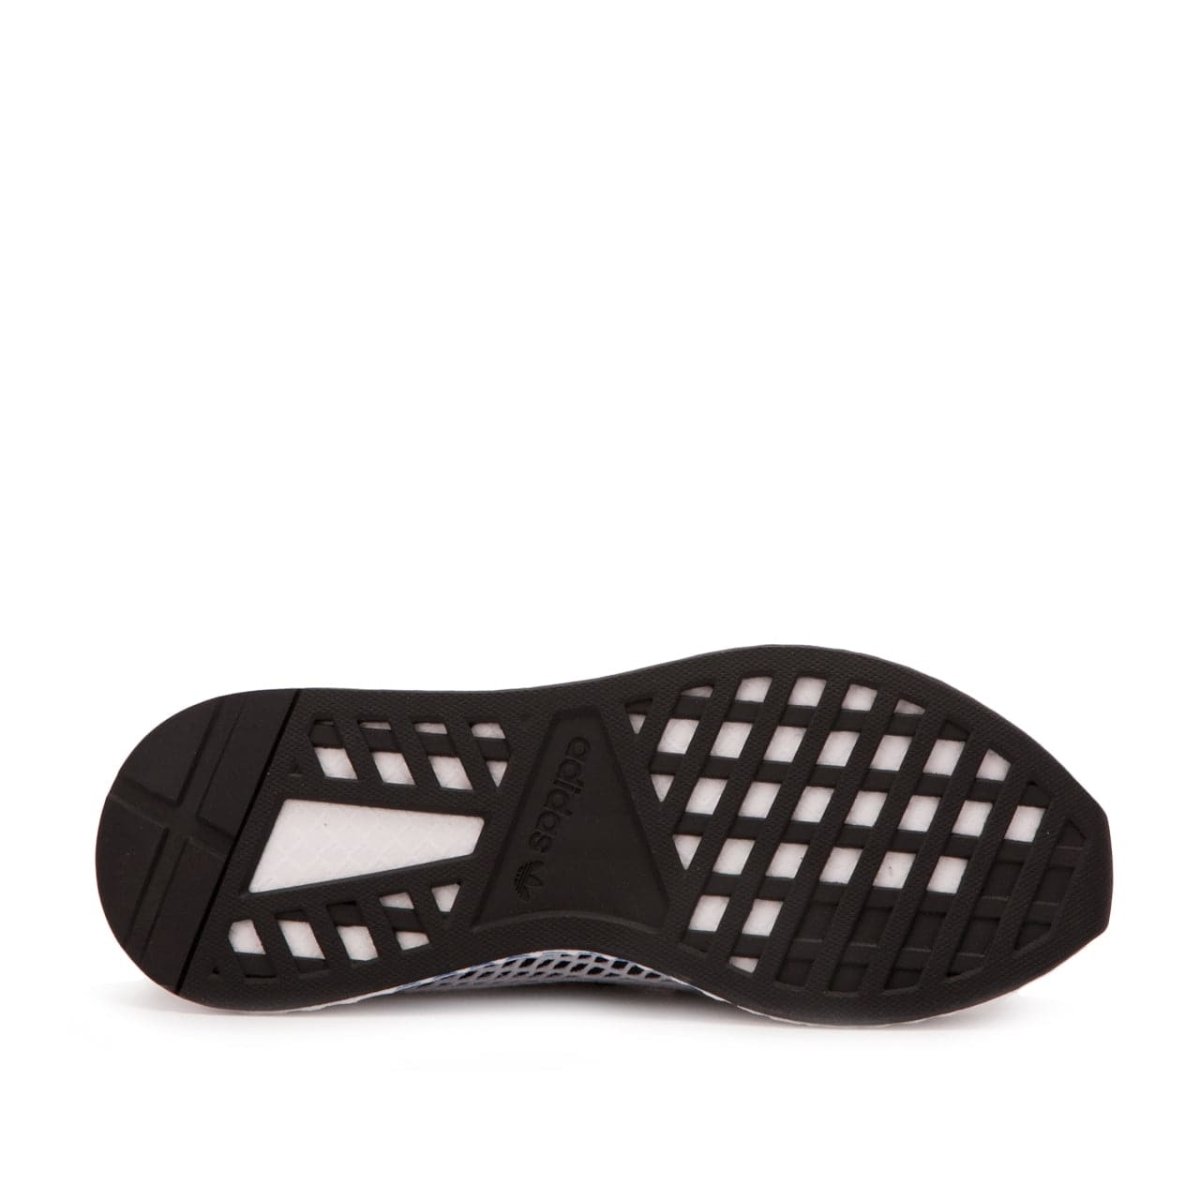 adidas Deerupt Runner (Schwarz / Weiß)  - Allike Store